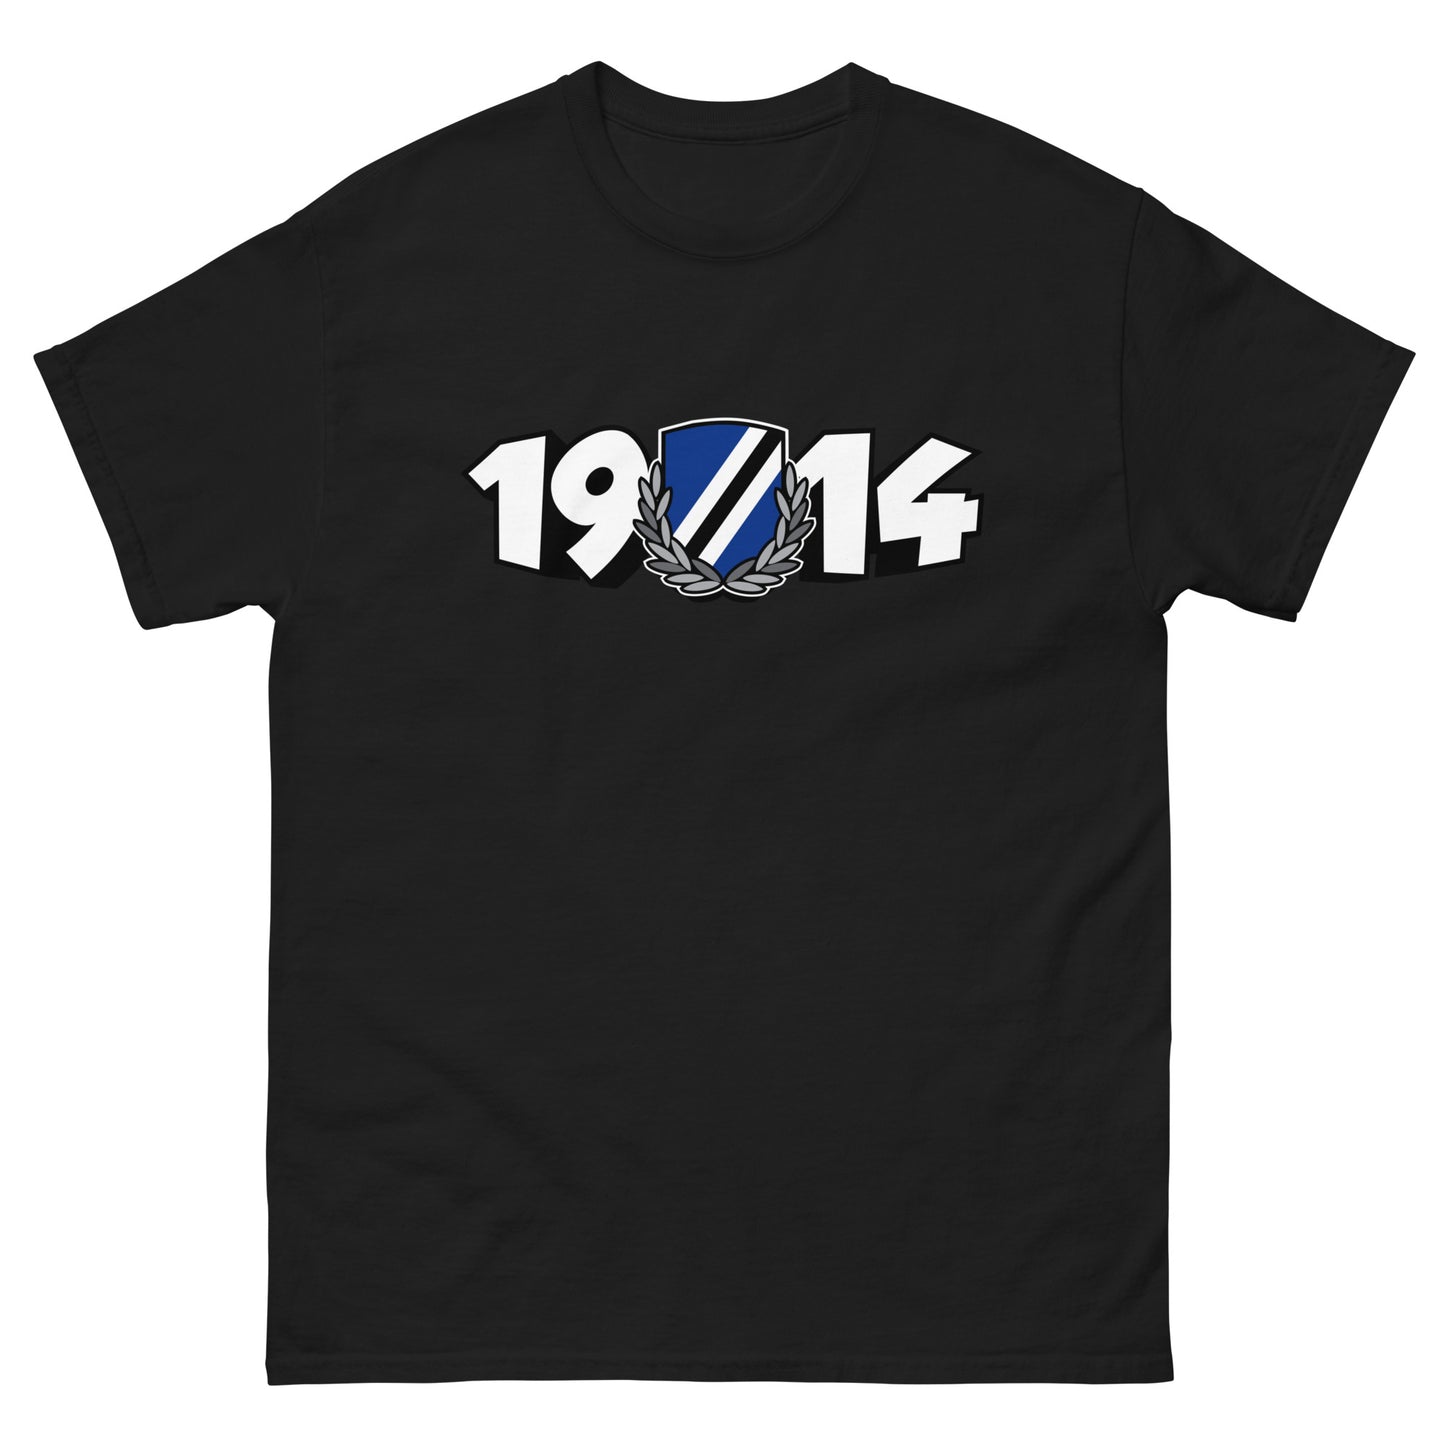 T-shirt 1914